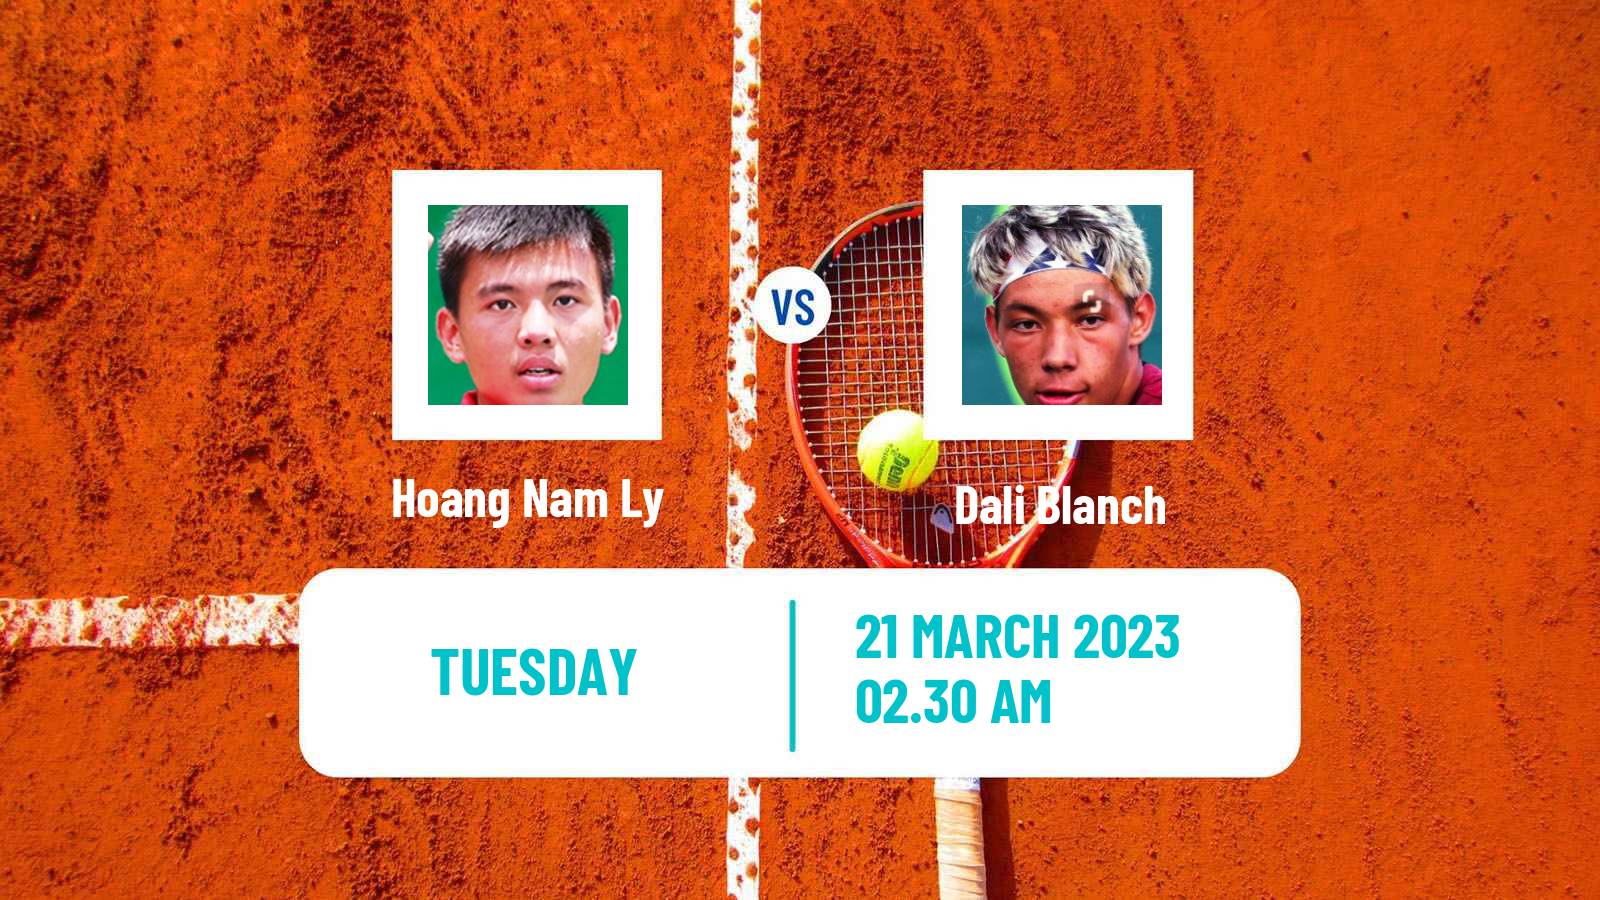 Tennis ITF Tournaments Hoang Nam Ly - Dali Blanch